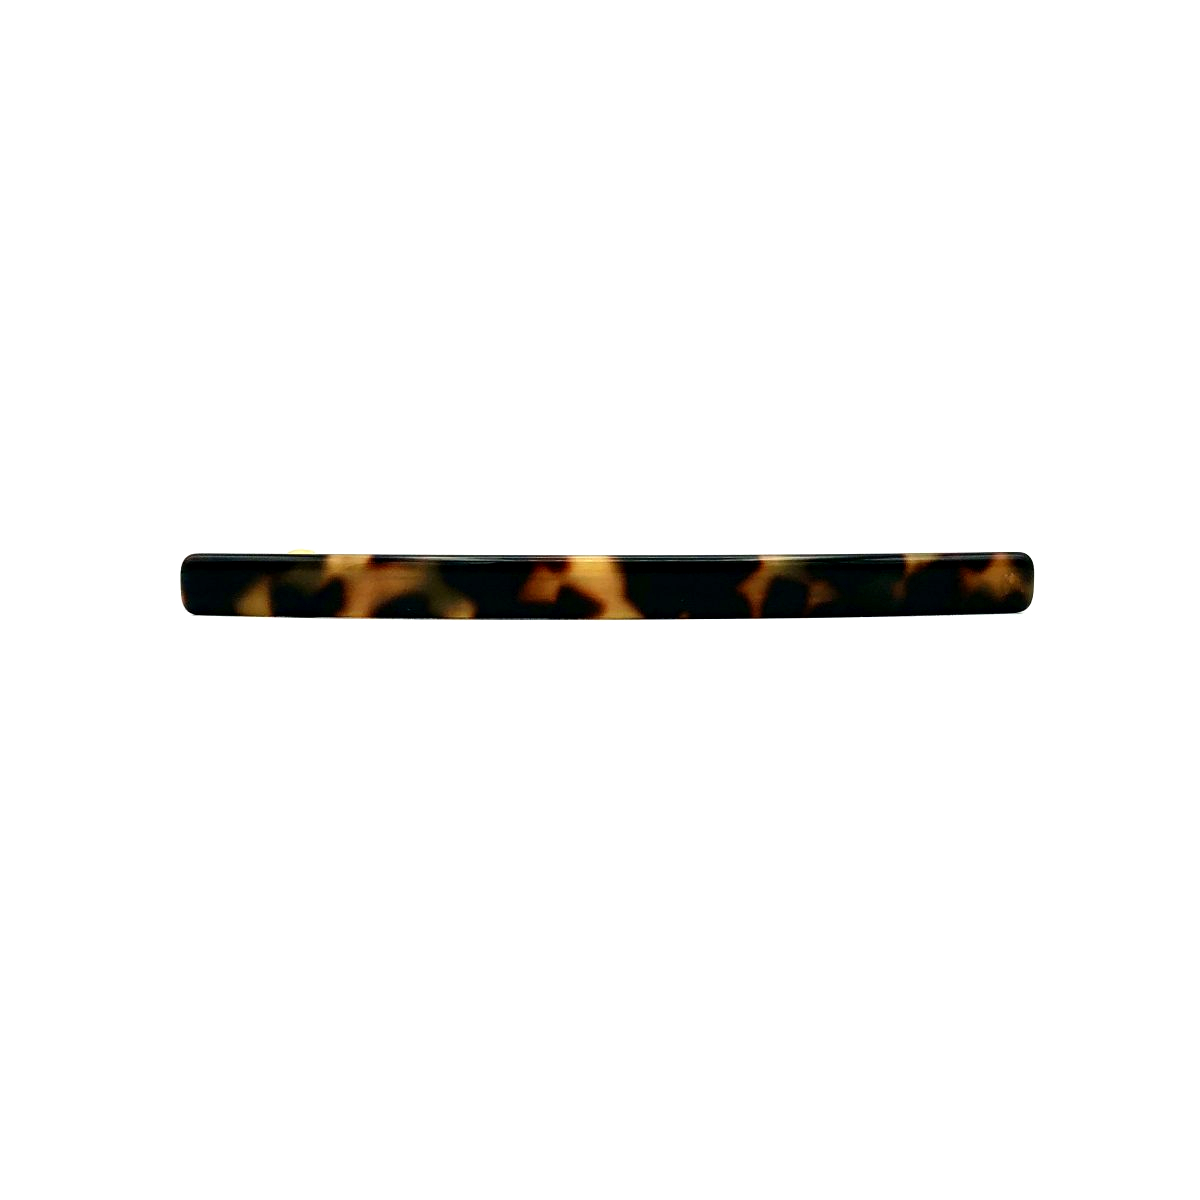 Haarspange schwarz/honig - lang, flach - 10,3 cm